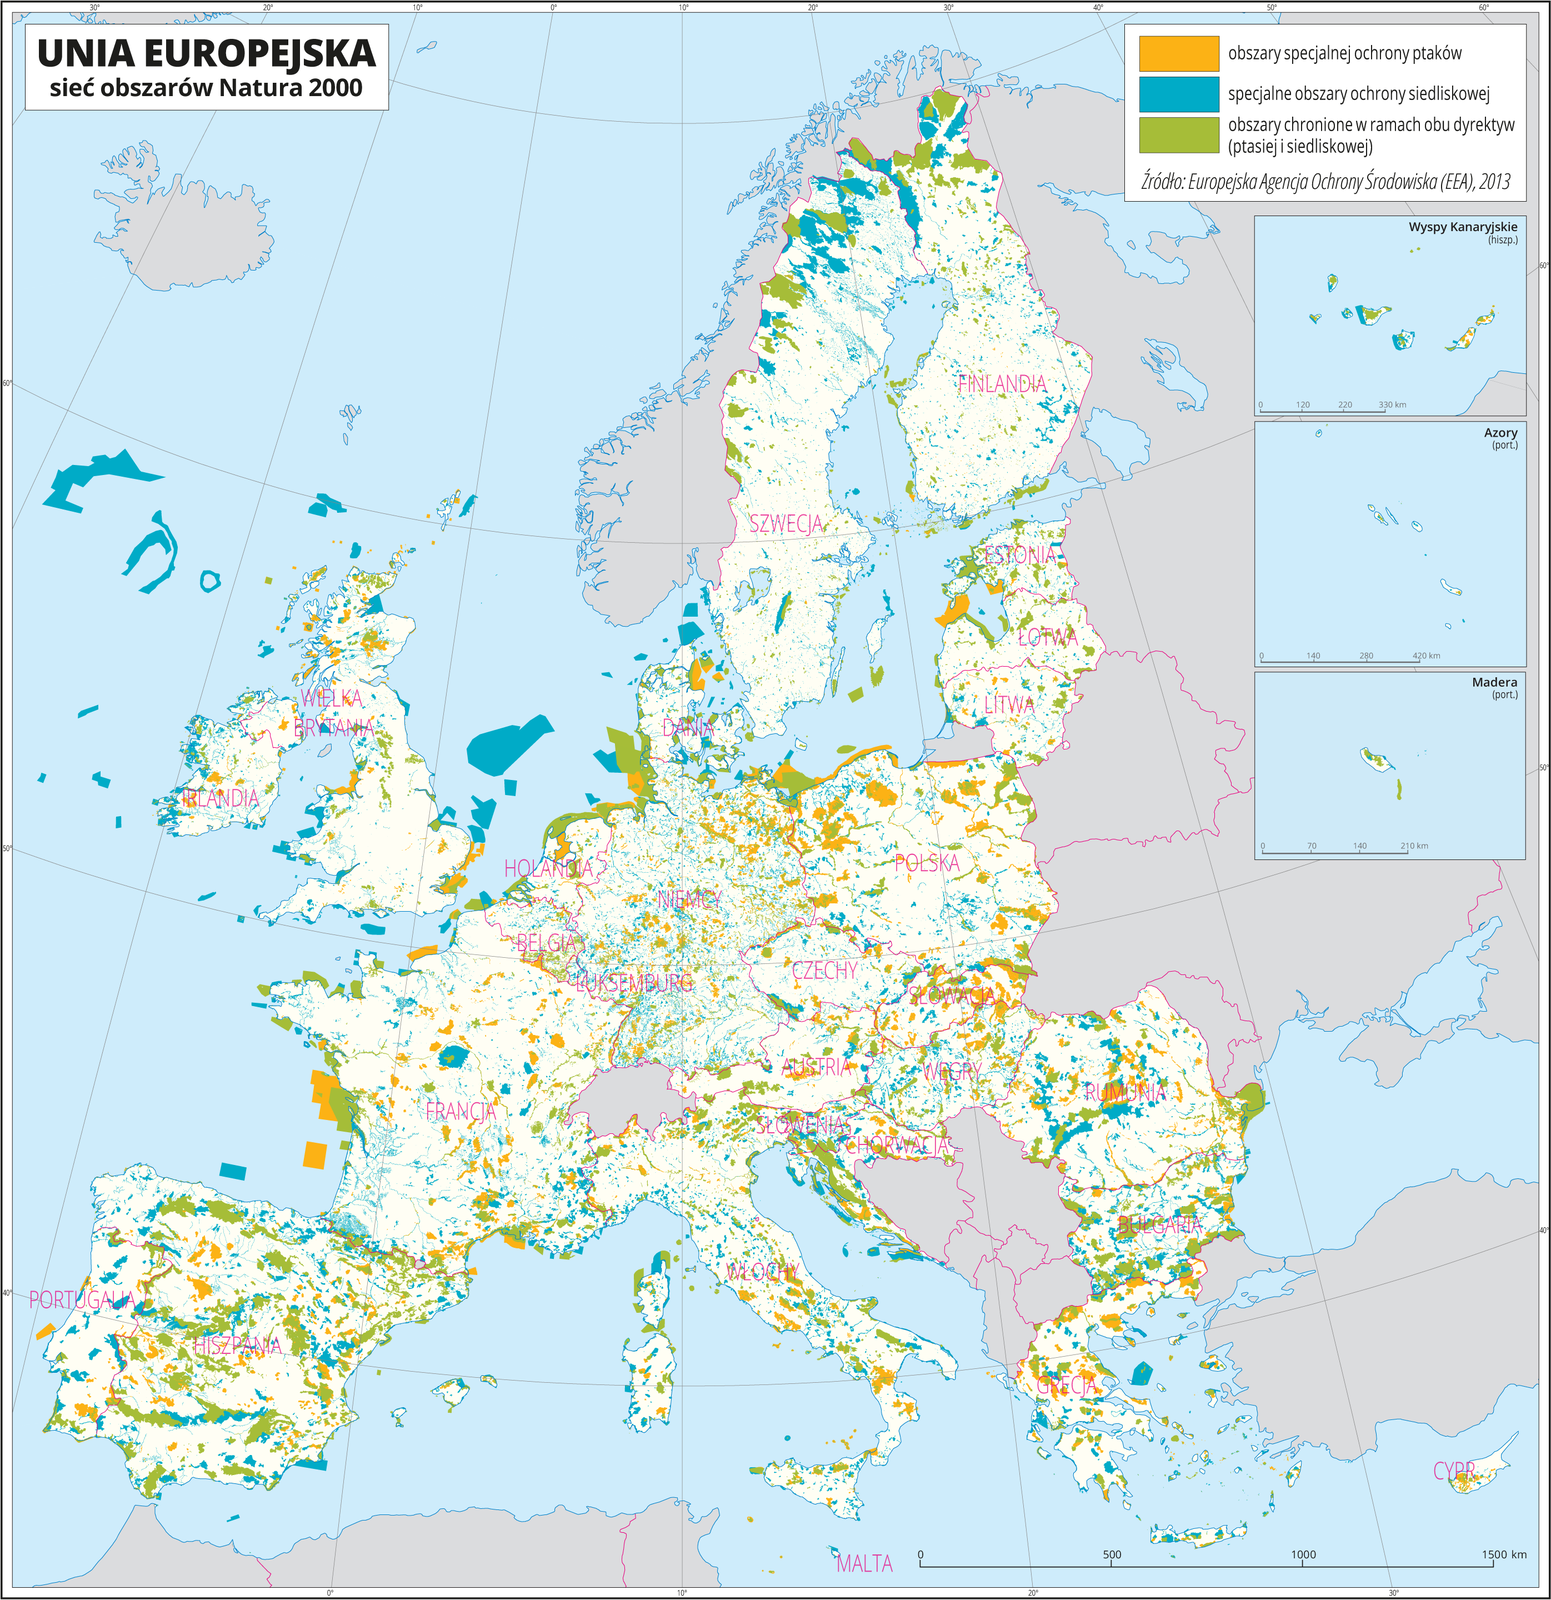 Ilustracja przedstawia mapę Europy. Państwa spoza Unii Europejskiej oznaczono kolorem szarym. Na mapie barwnymi plamami przedstawiono obszary specjalnej ochrony ptaków, specjalne obszary ochrony siedliskowej i obszary chronione w ramach obu dyrektyw (ptasiej i siedliskowej). Obszary te występują na lądzie, jak również w obrębie mórz. Mapa zawiera południki i równoleżniki, dookoła mapy w białej ramce opisano współrzędne geograficzne co dziesięć stopni.